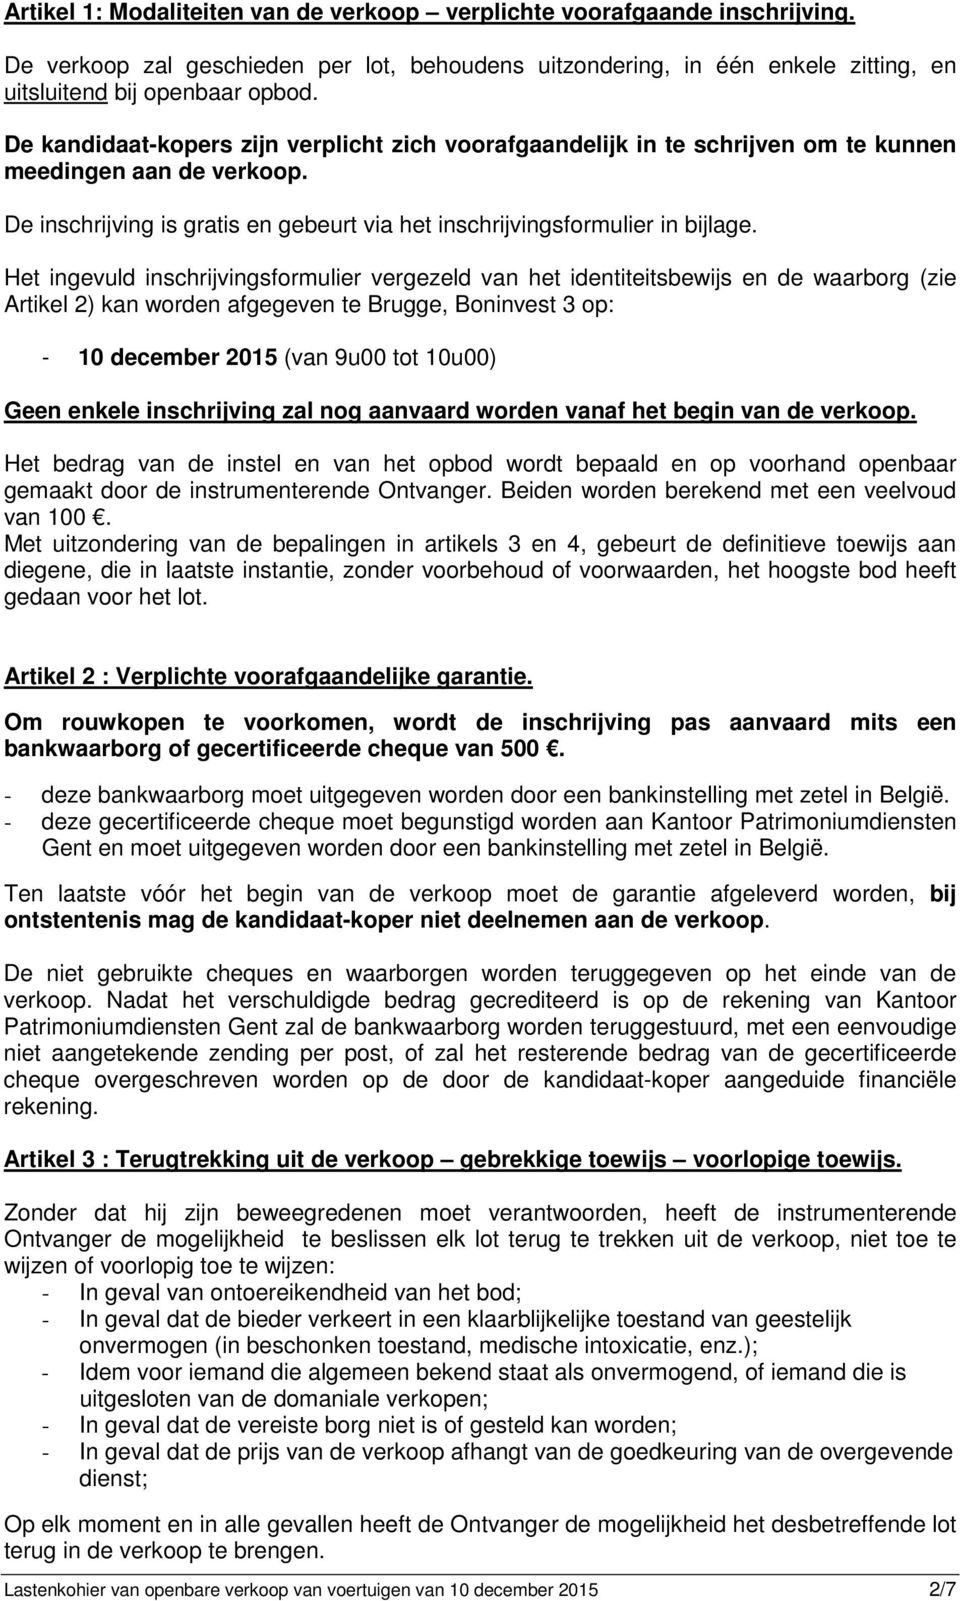 Het ingevuld inschrijvingsformulier vergezeld van het identiteitsbewijs en de waarborg (zie Artikel 2) kan worden afgegeven te Brugge, Boninvest 3 op: - 10 december 2015 (van 9u00 tot 10u00) Geen